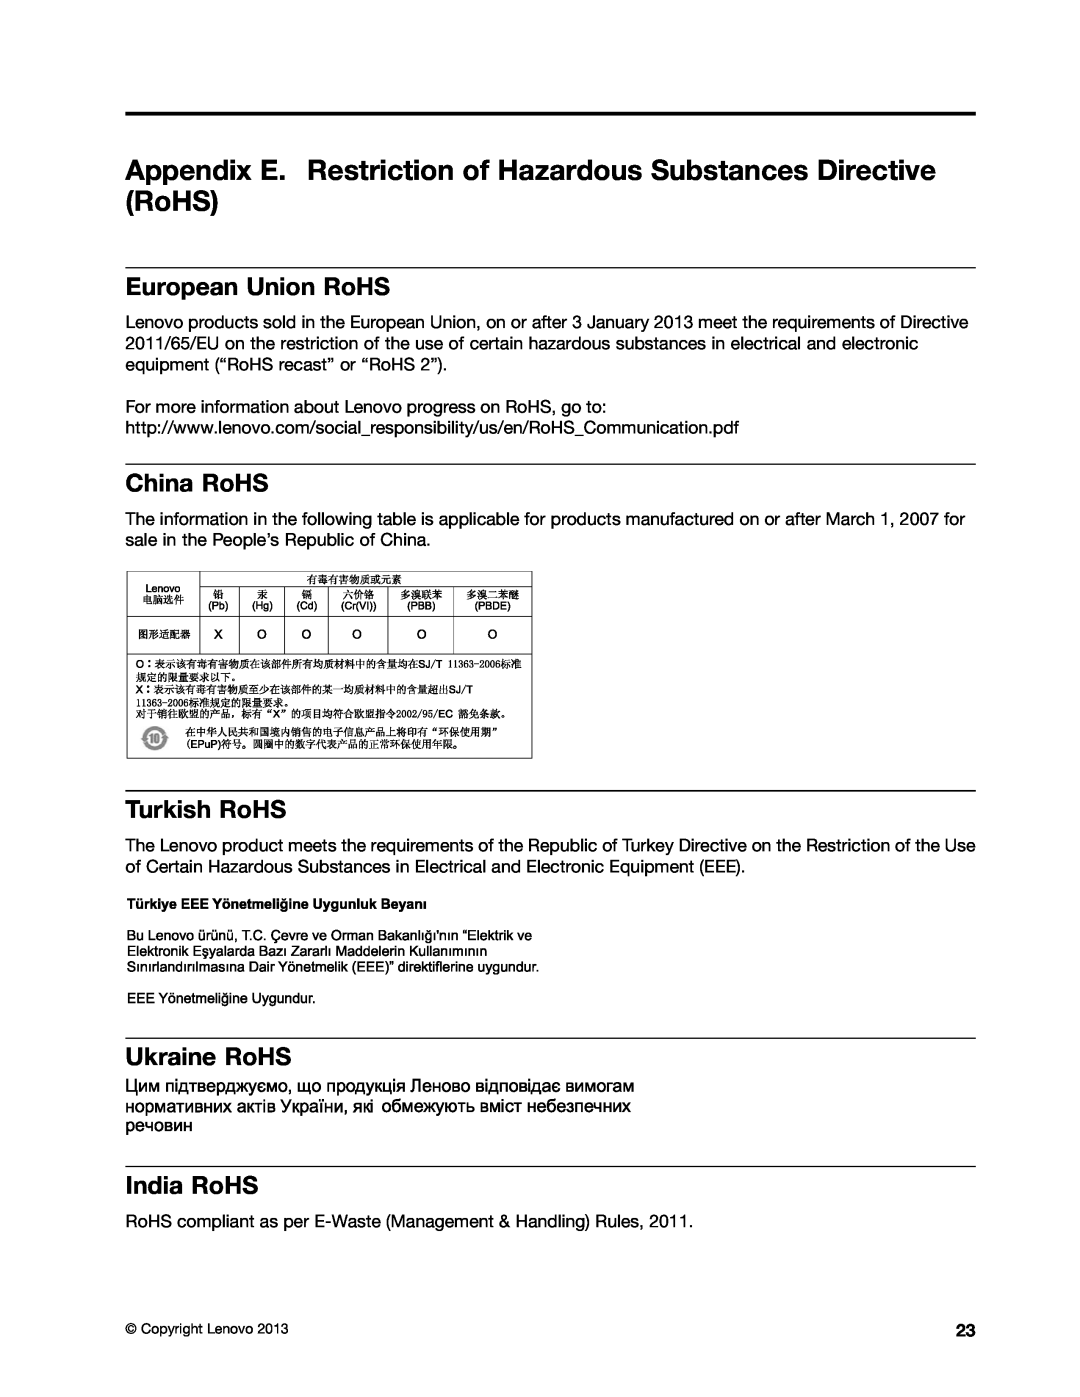 Lenovo 0C22230, 0C22235 Appendix E. Restriction of Hazardous Substances Directive RoHS, European Union RoHS, China RoHS 